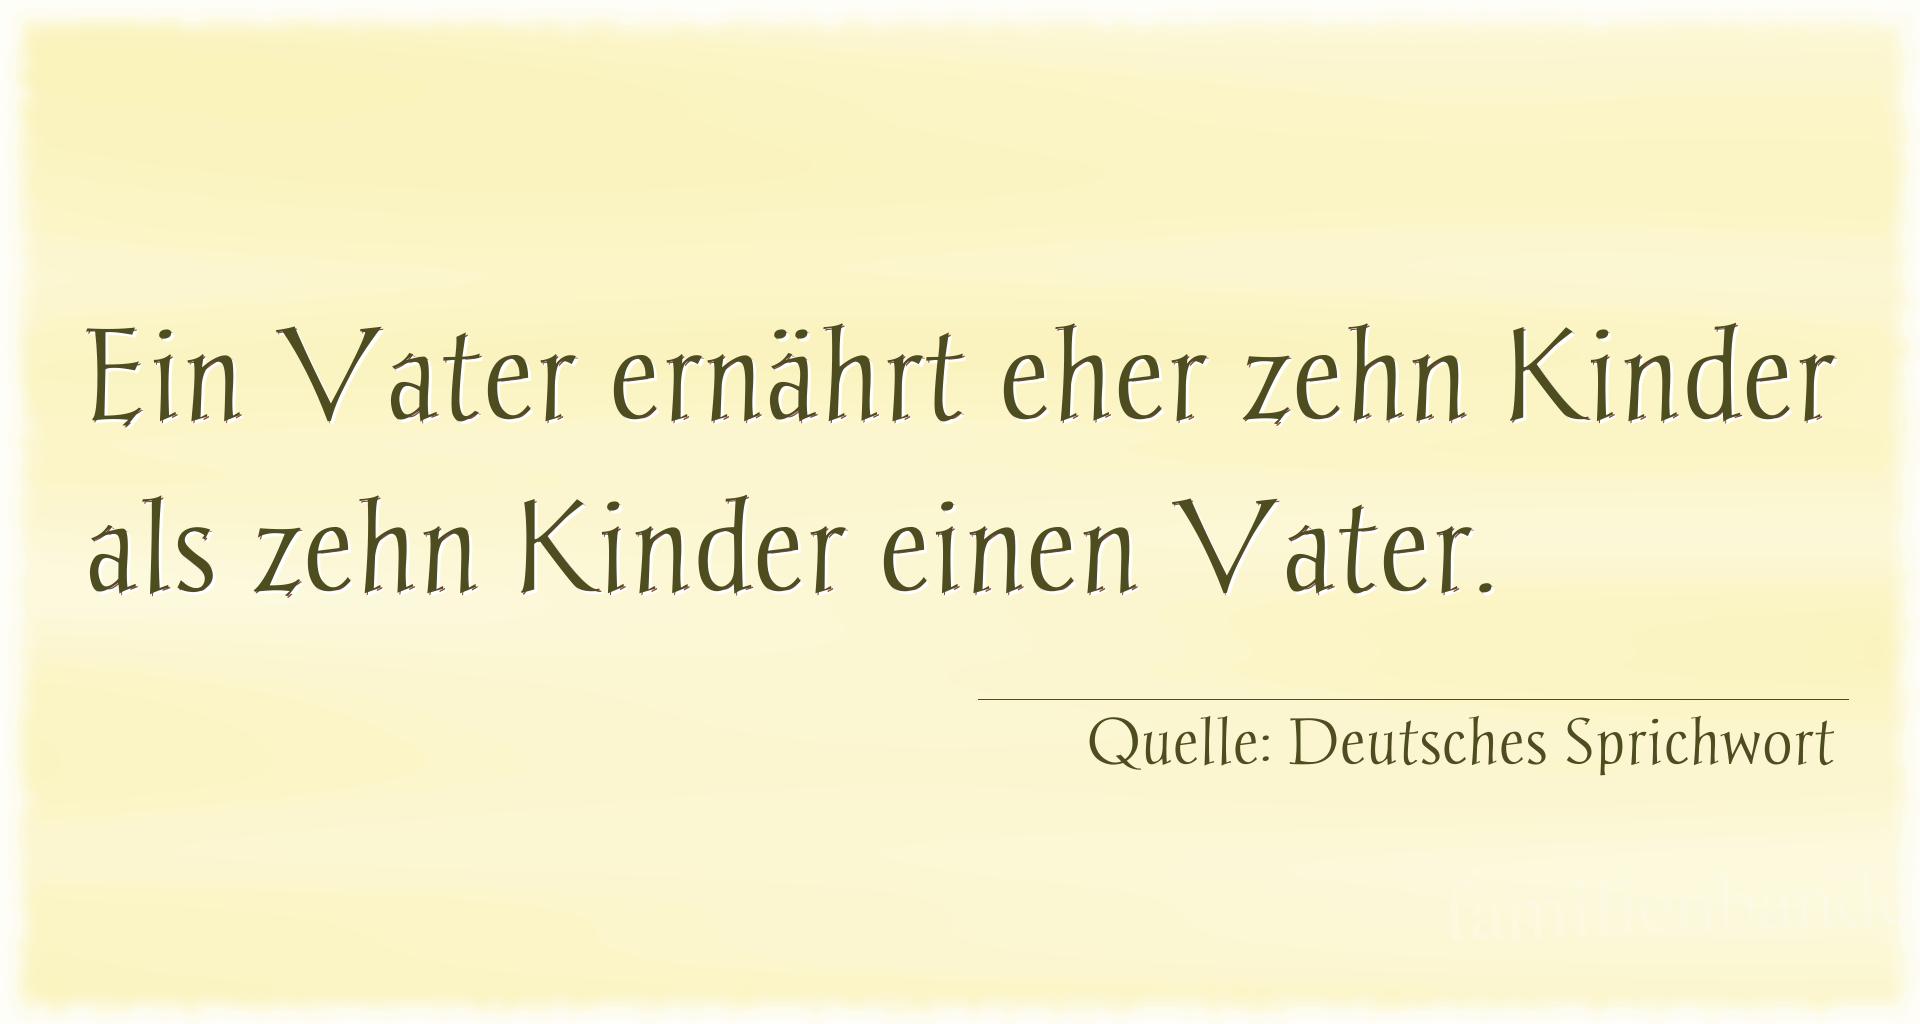 Spruch Nr. 337 (Deutsches Sprichwort): Ein Vater ernährt eher zehn Kinder als zehn Kinder einen  [...]